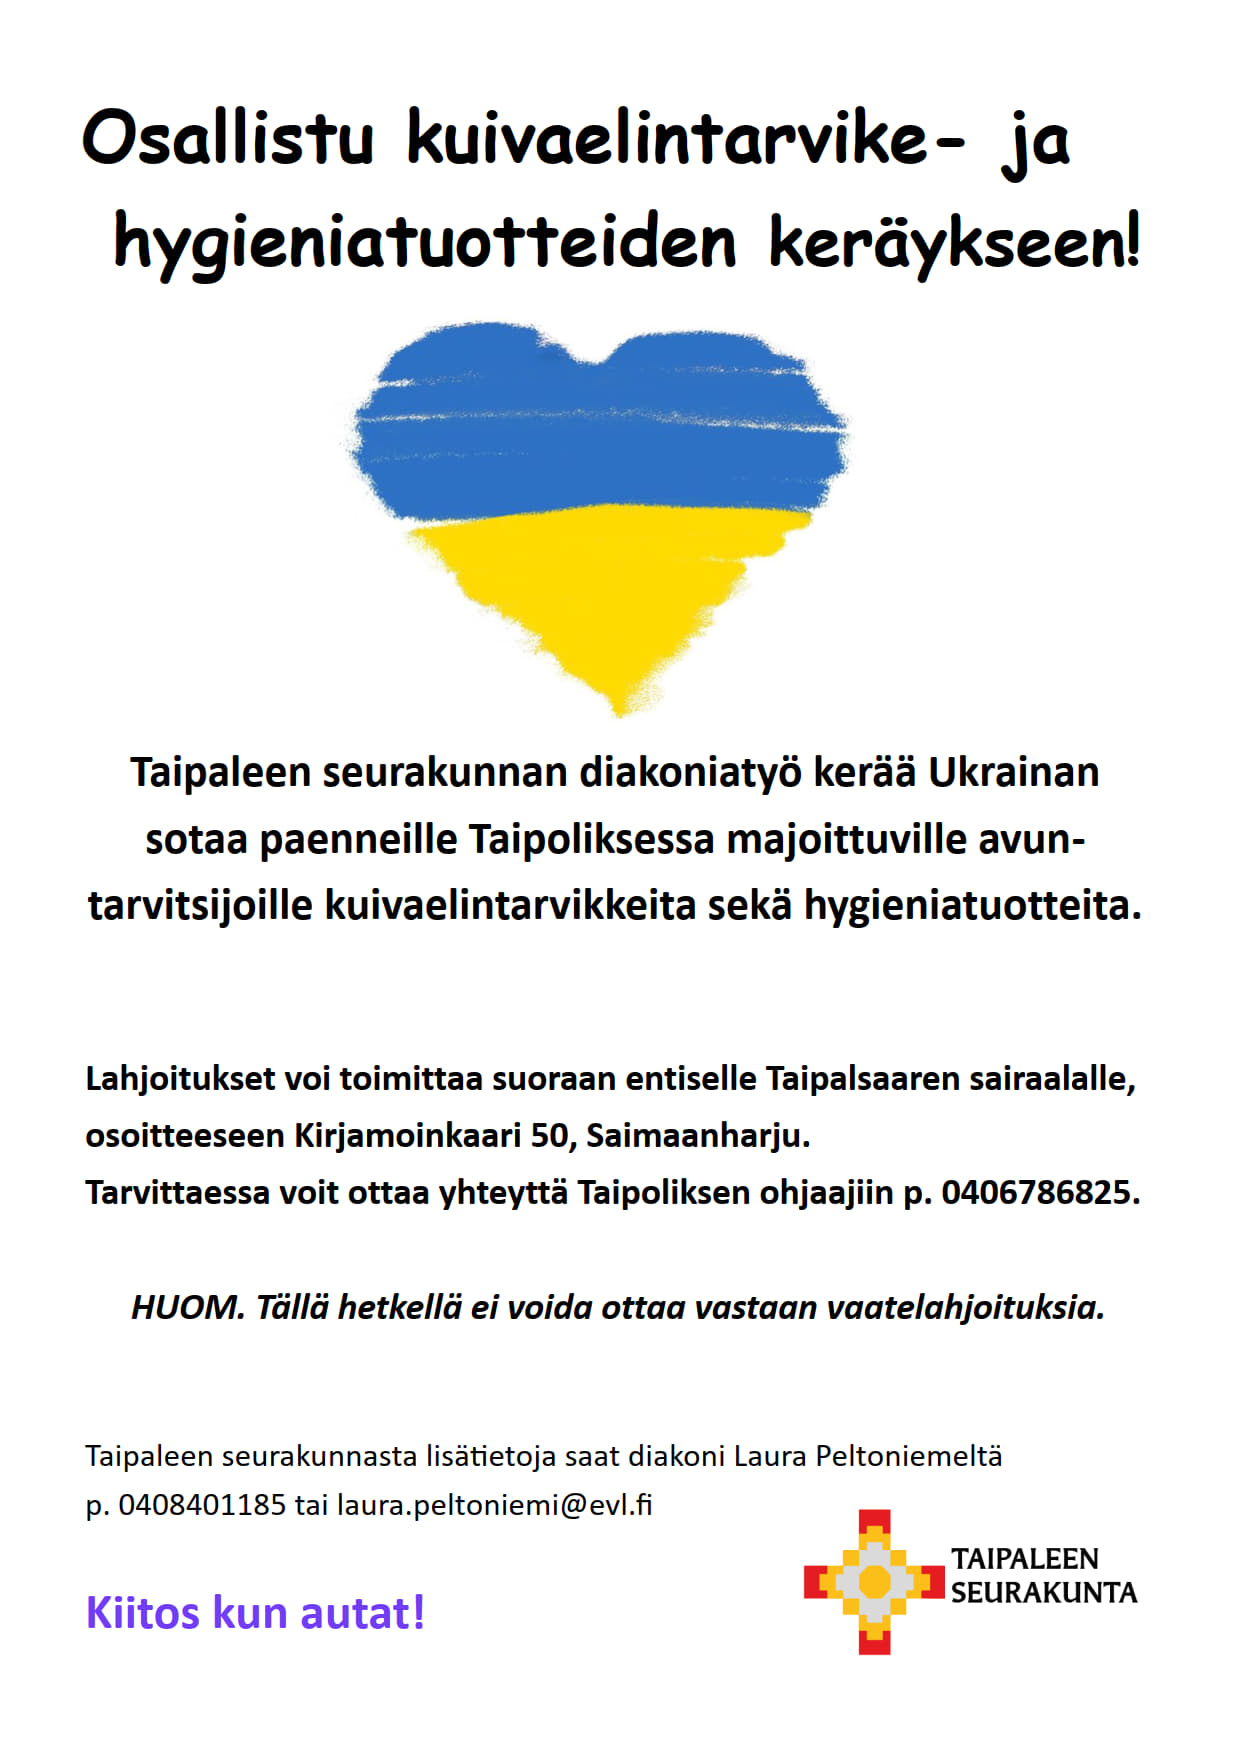 sydän ukrainan lipun väreissä, tekstiä